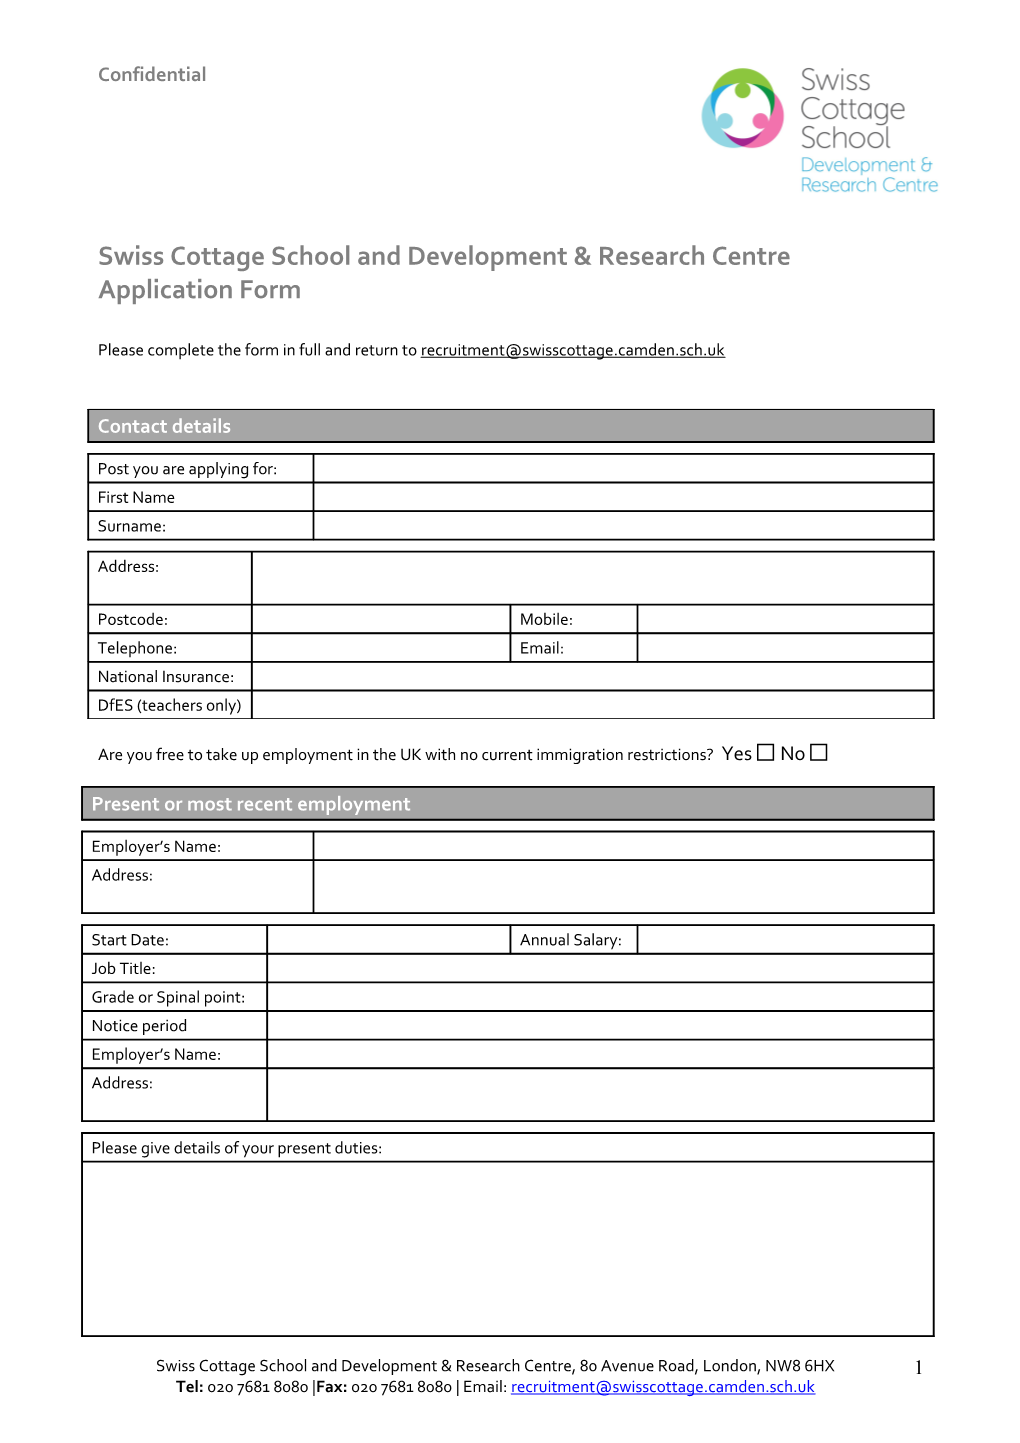 Swisscottageschool and Development & Research Centre